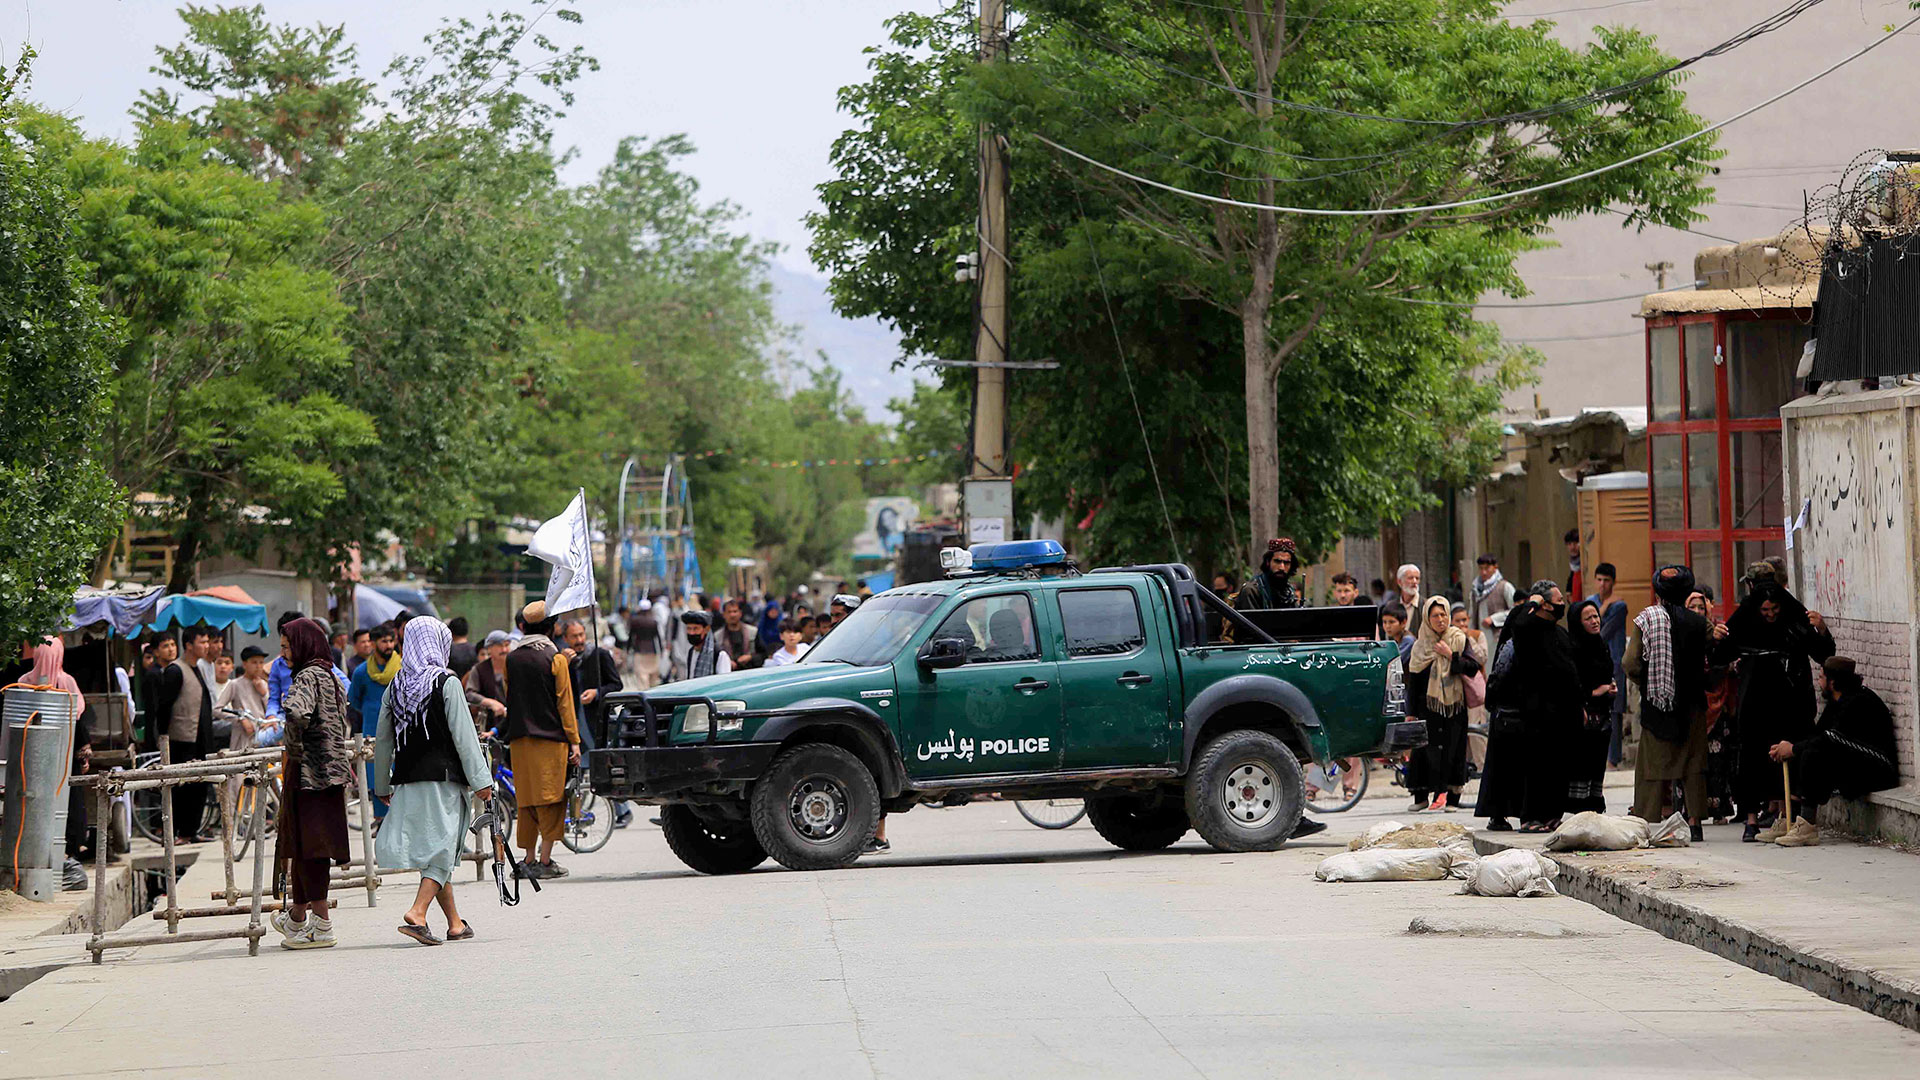 Taliban stehen nach mehreren Bombenanschlägen in einem mehrheitlich schiitischen Viertel in Kabul, Afghanistan, in der Umgebung einer Schule Wache. | EPA